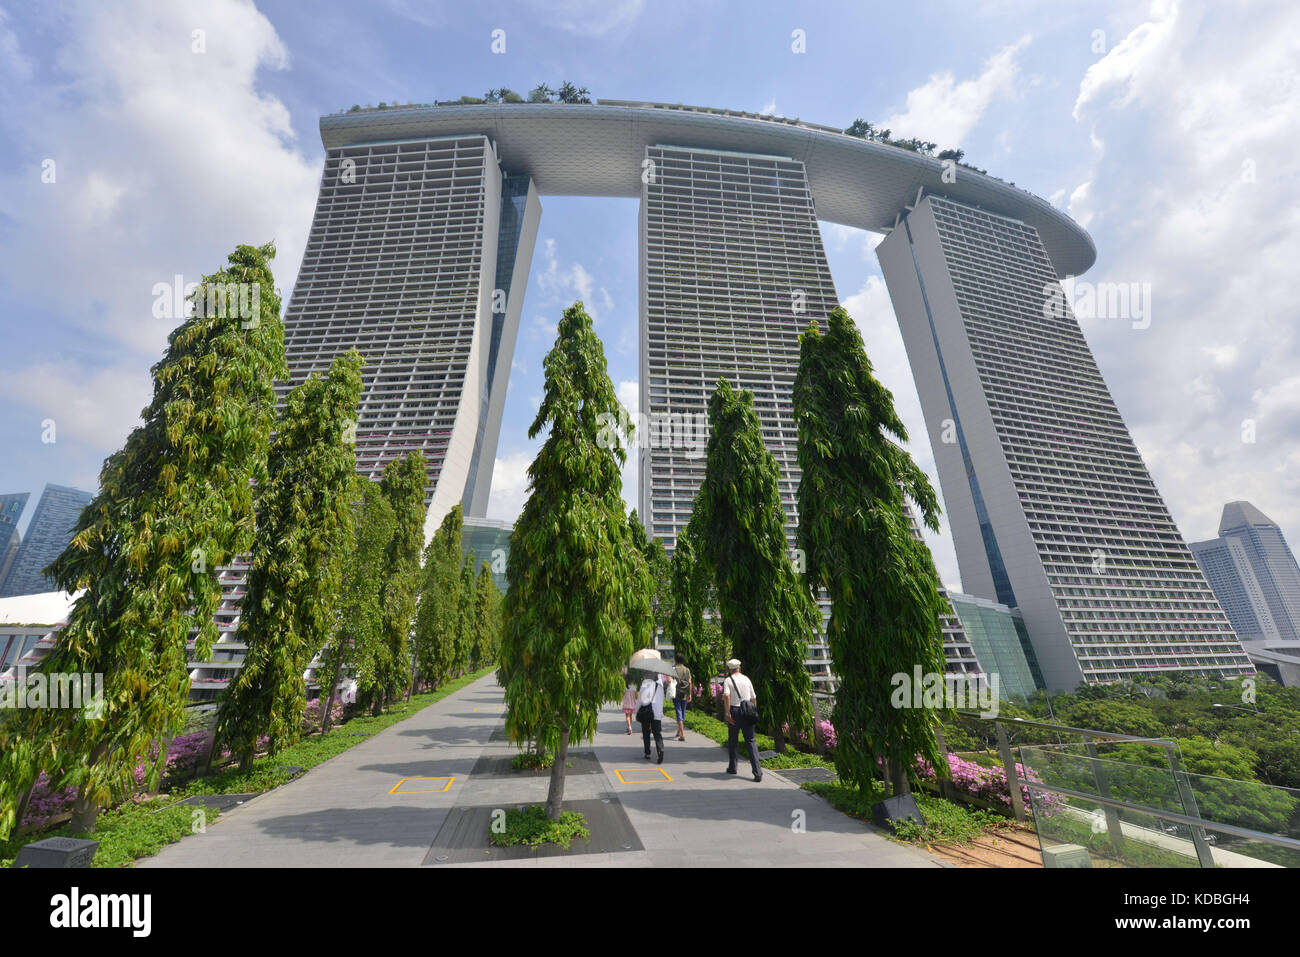 Singapur. El Marina Bay Sands, un enorme complejo hotelero con tres hoteles de 55 pisos, una terraza en la azotea que cubre una hectárea, 2.560 habitaciones, un casino y Foto de stock